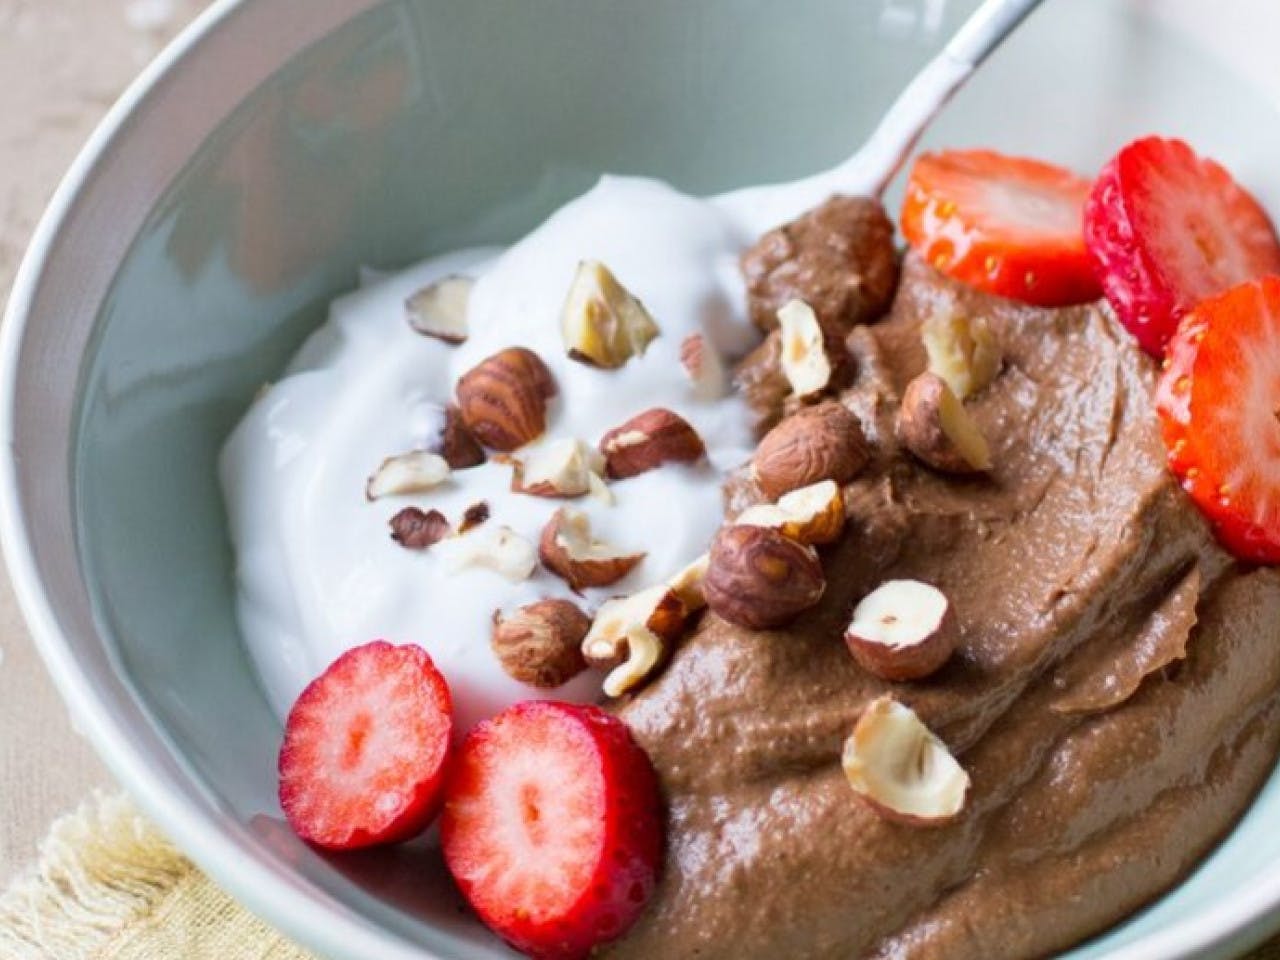 Choco Hazelnut moussa with yogurt